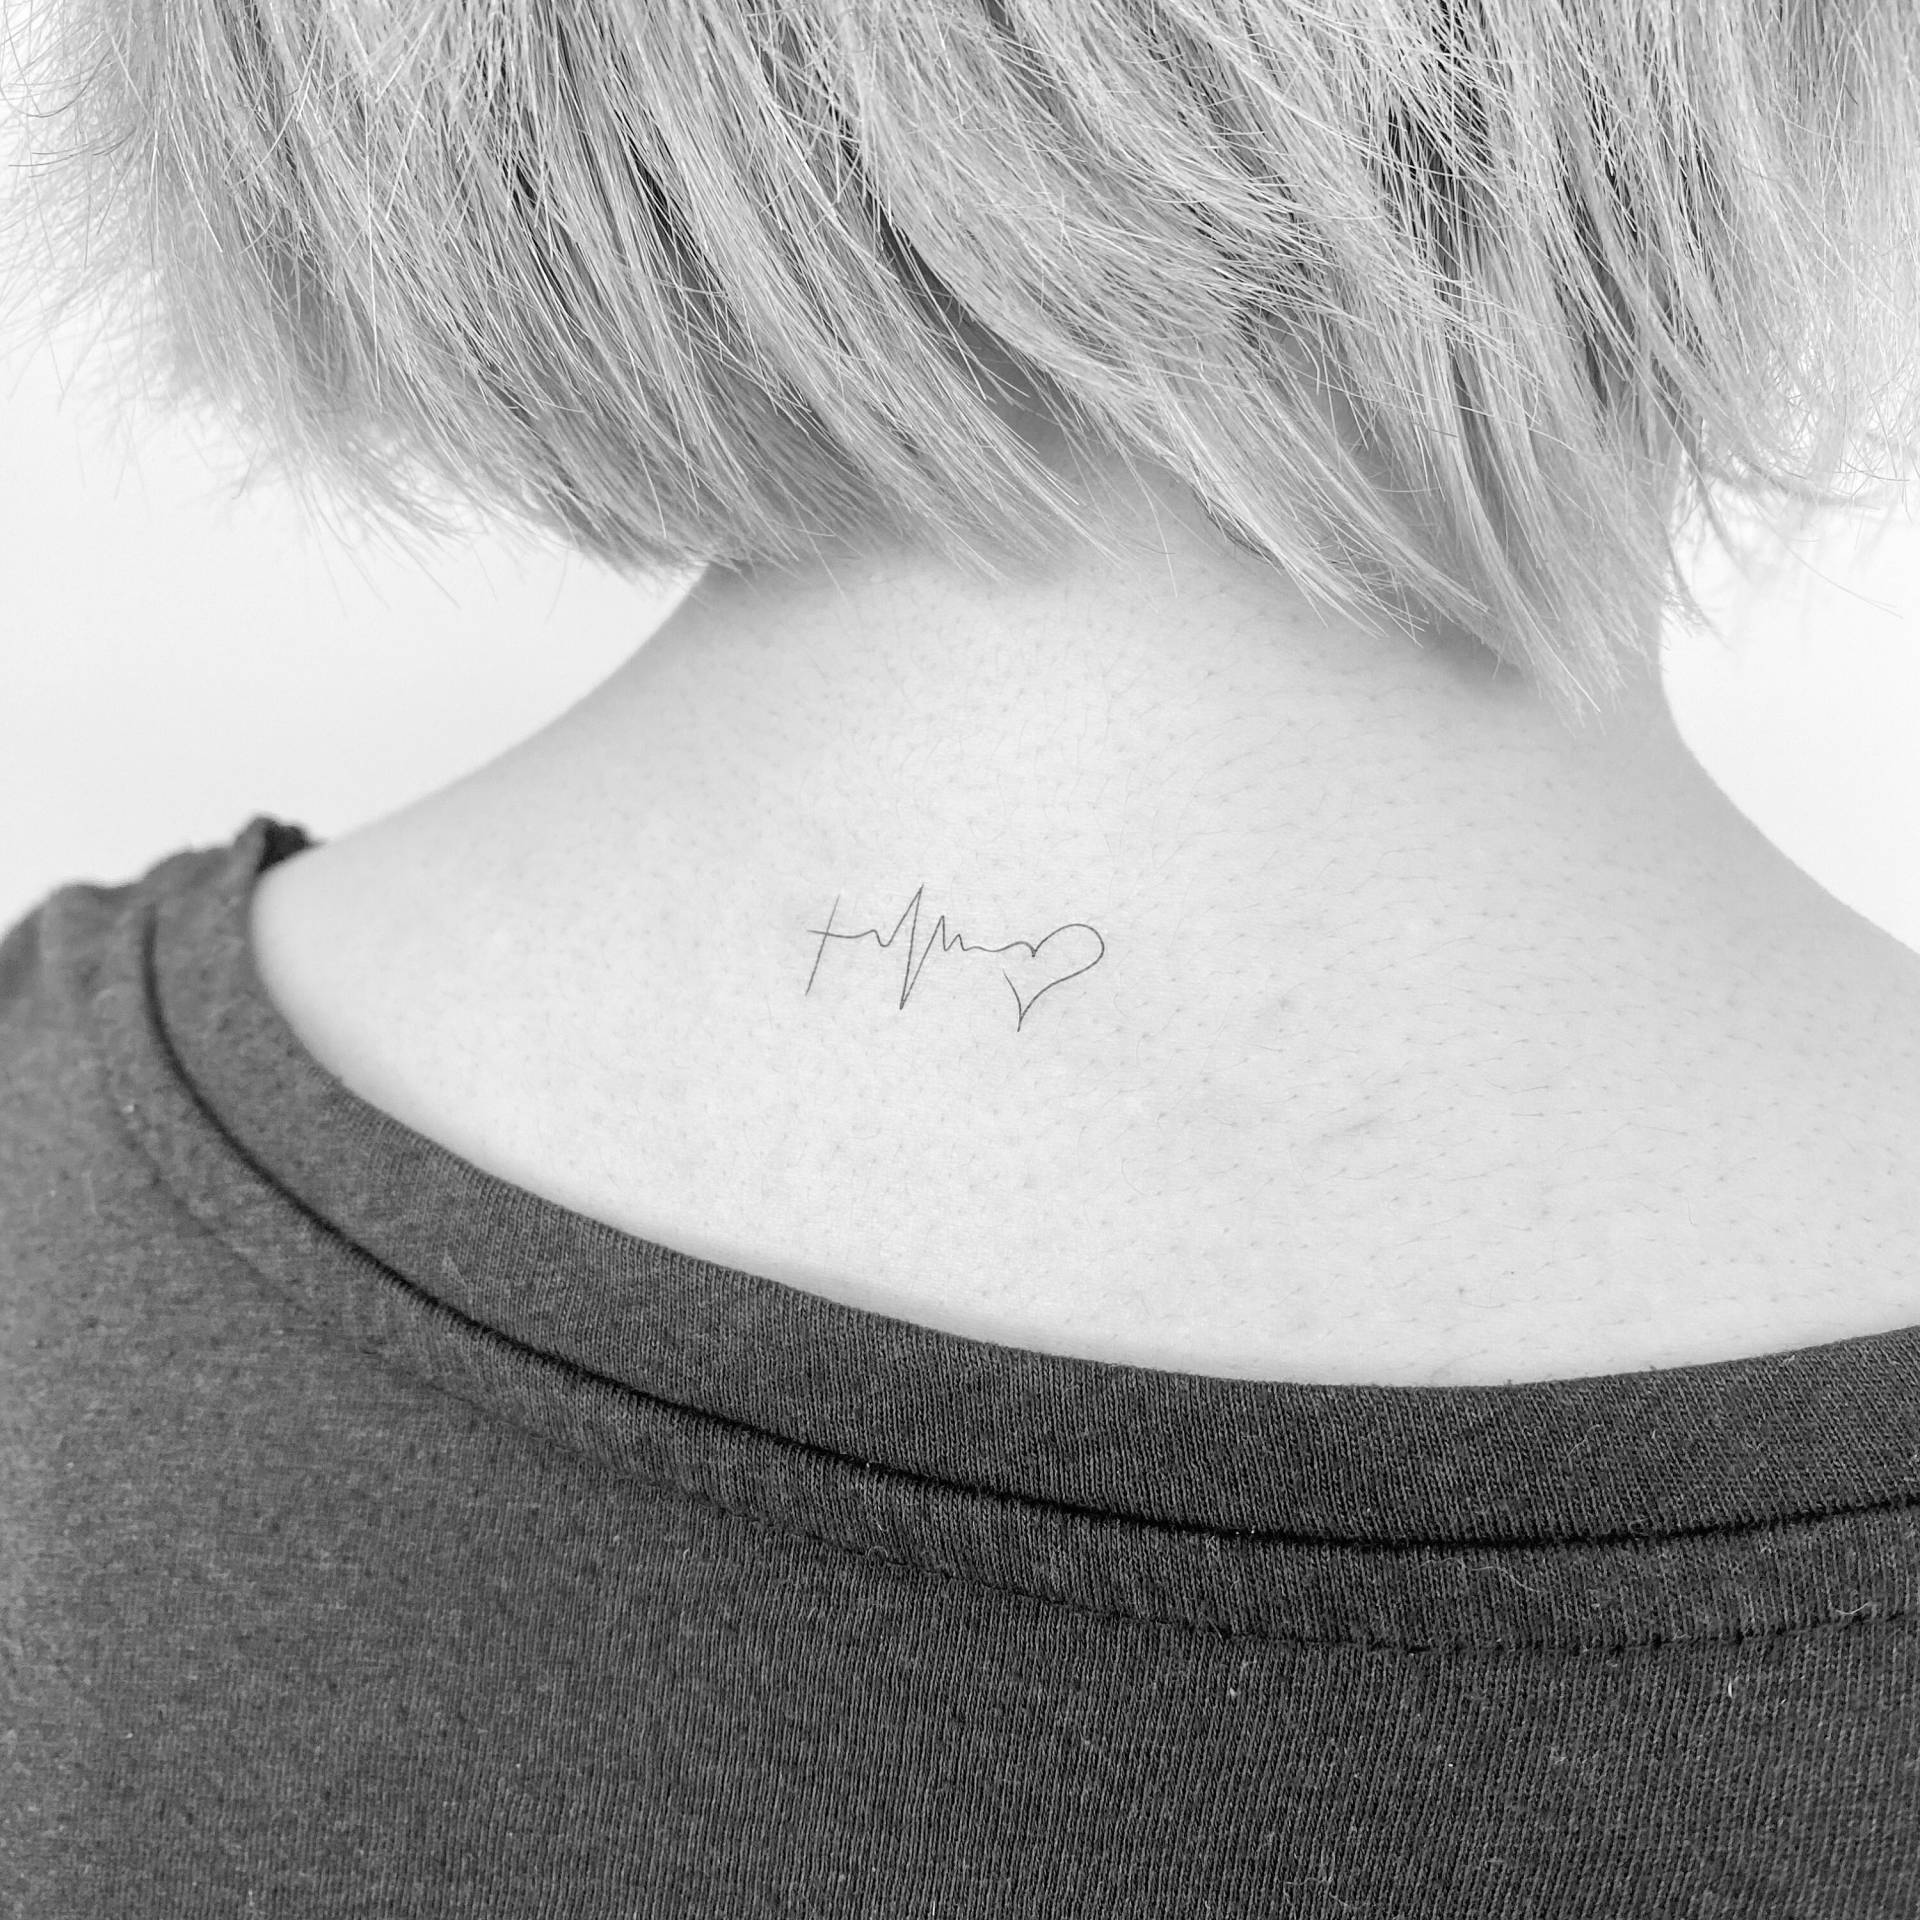 Fine Line Glaube Hoffnung Liebe Temporäres Tattoo | 3Er Set von smalltattoos